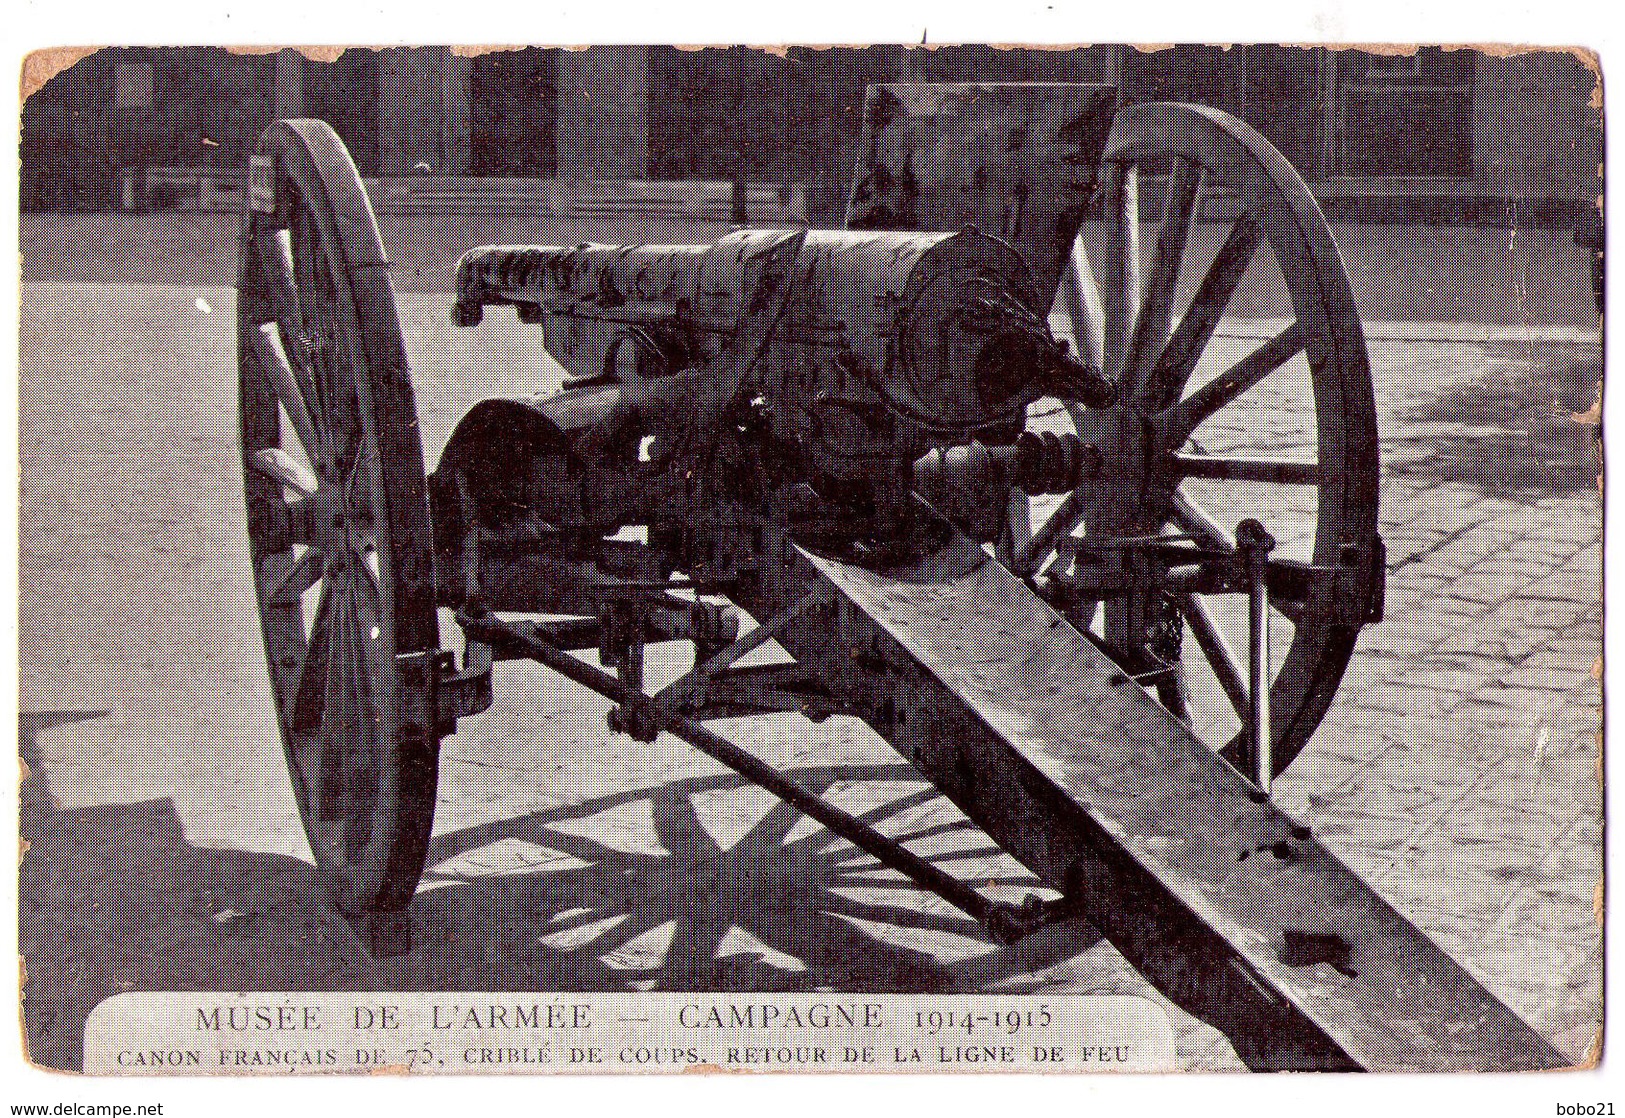 3872 - Musée De L'Armée - Campagne 1914-1915 - Canon Français De 75 Criblé De Coups ( Retour De La Ligne De Feu ) - - Museum